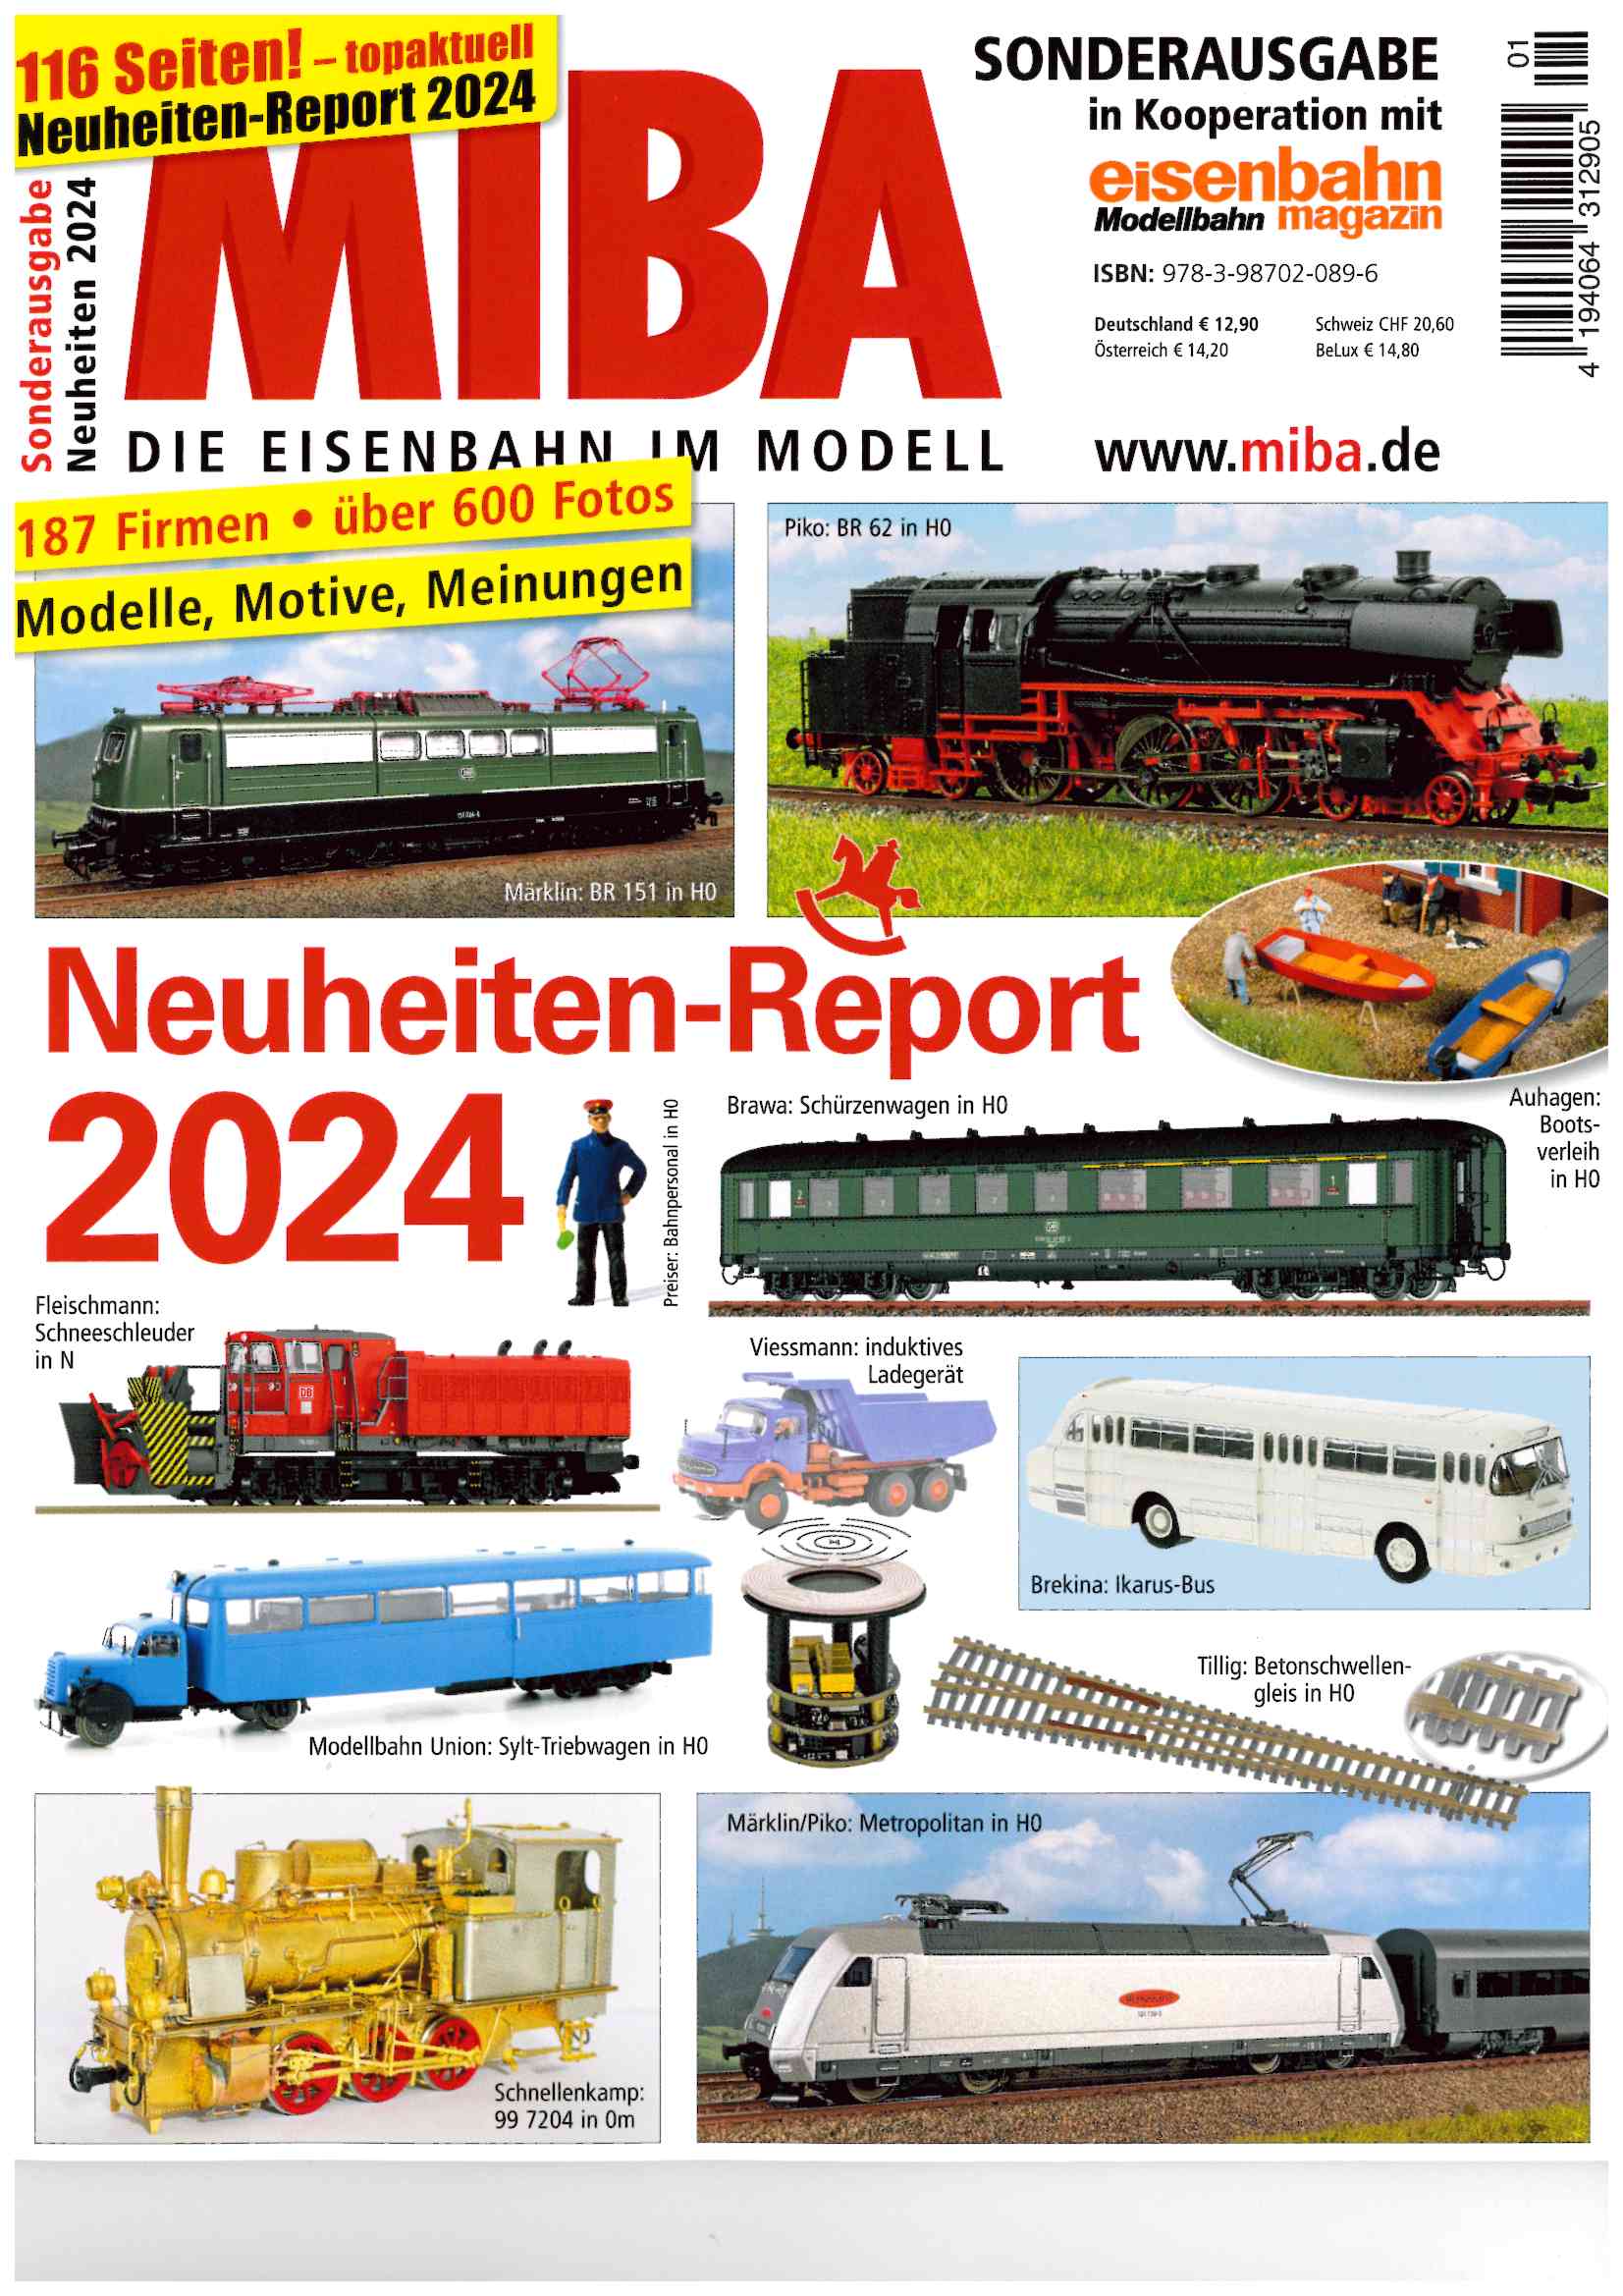 Messe Miba 2024 Sonderausgabe Neuheiten 2024 - Miba Sonderheft in Kooperation mit Eisenbahn / Modellbahn Magazin